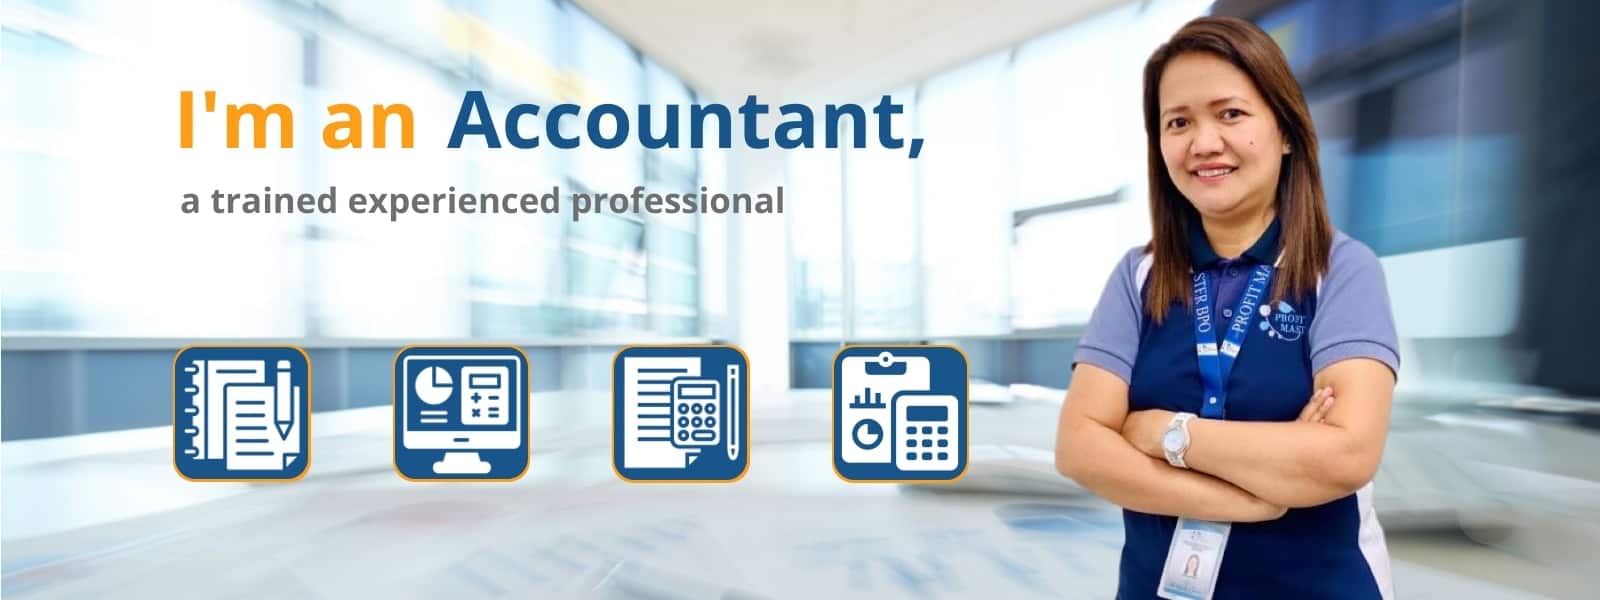 accountant_bookkeeper